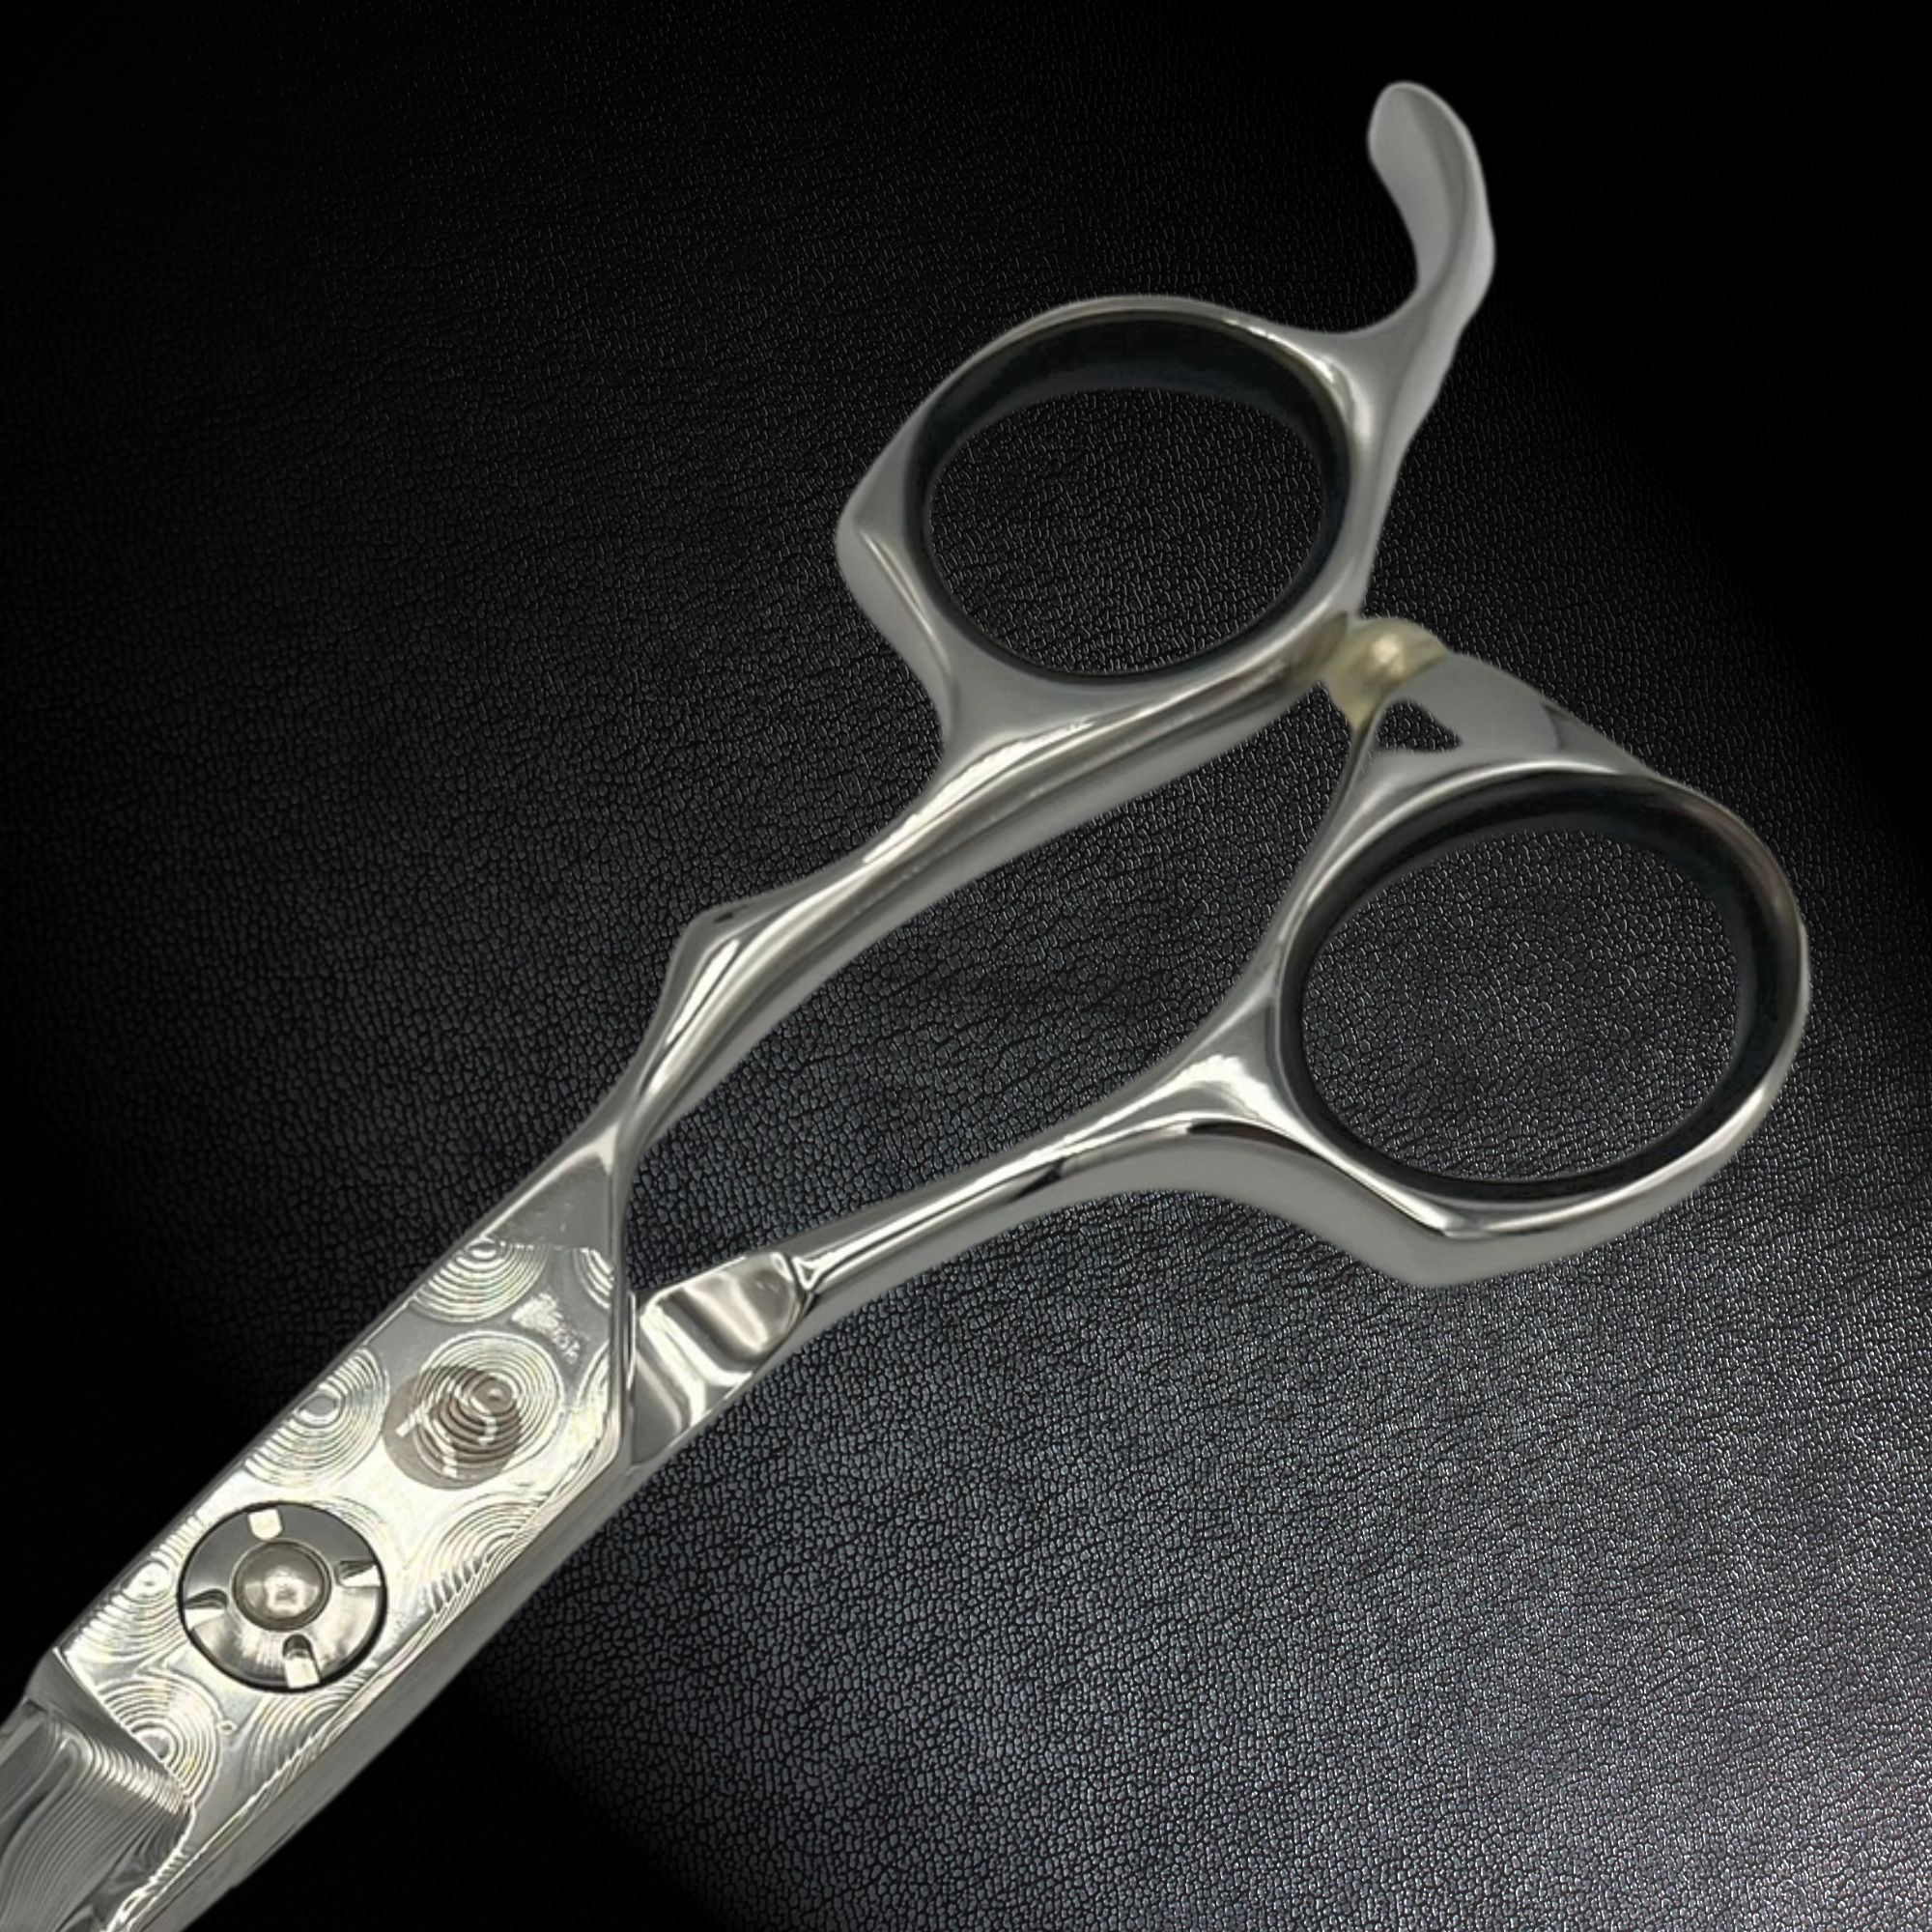 Kodachi Damascus Hair Cutting Shears/Scissors